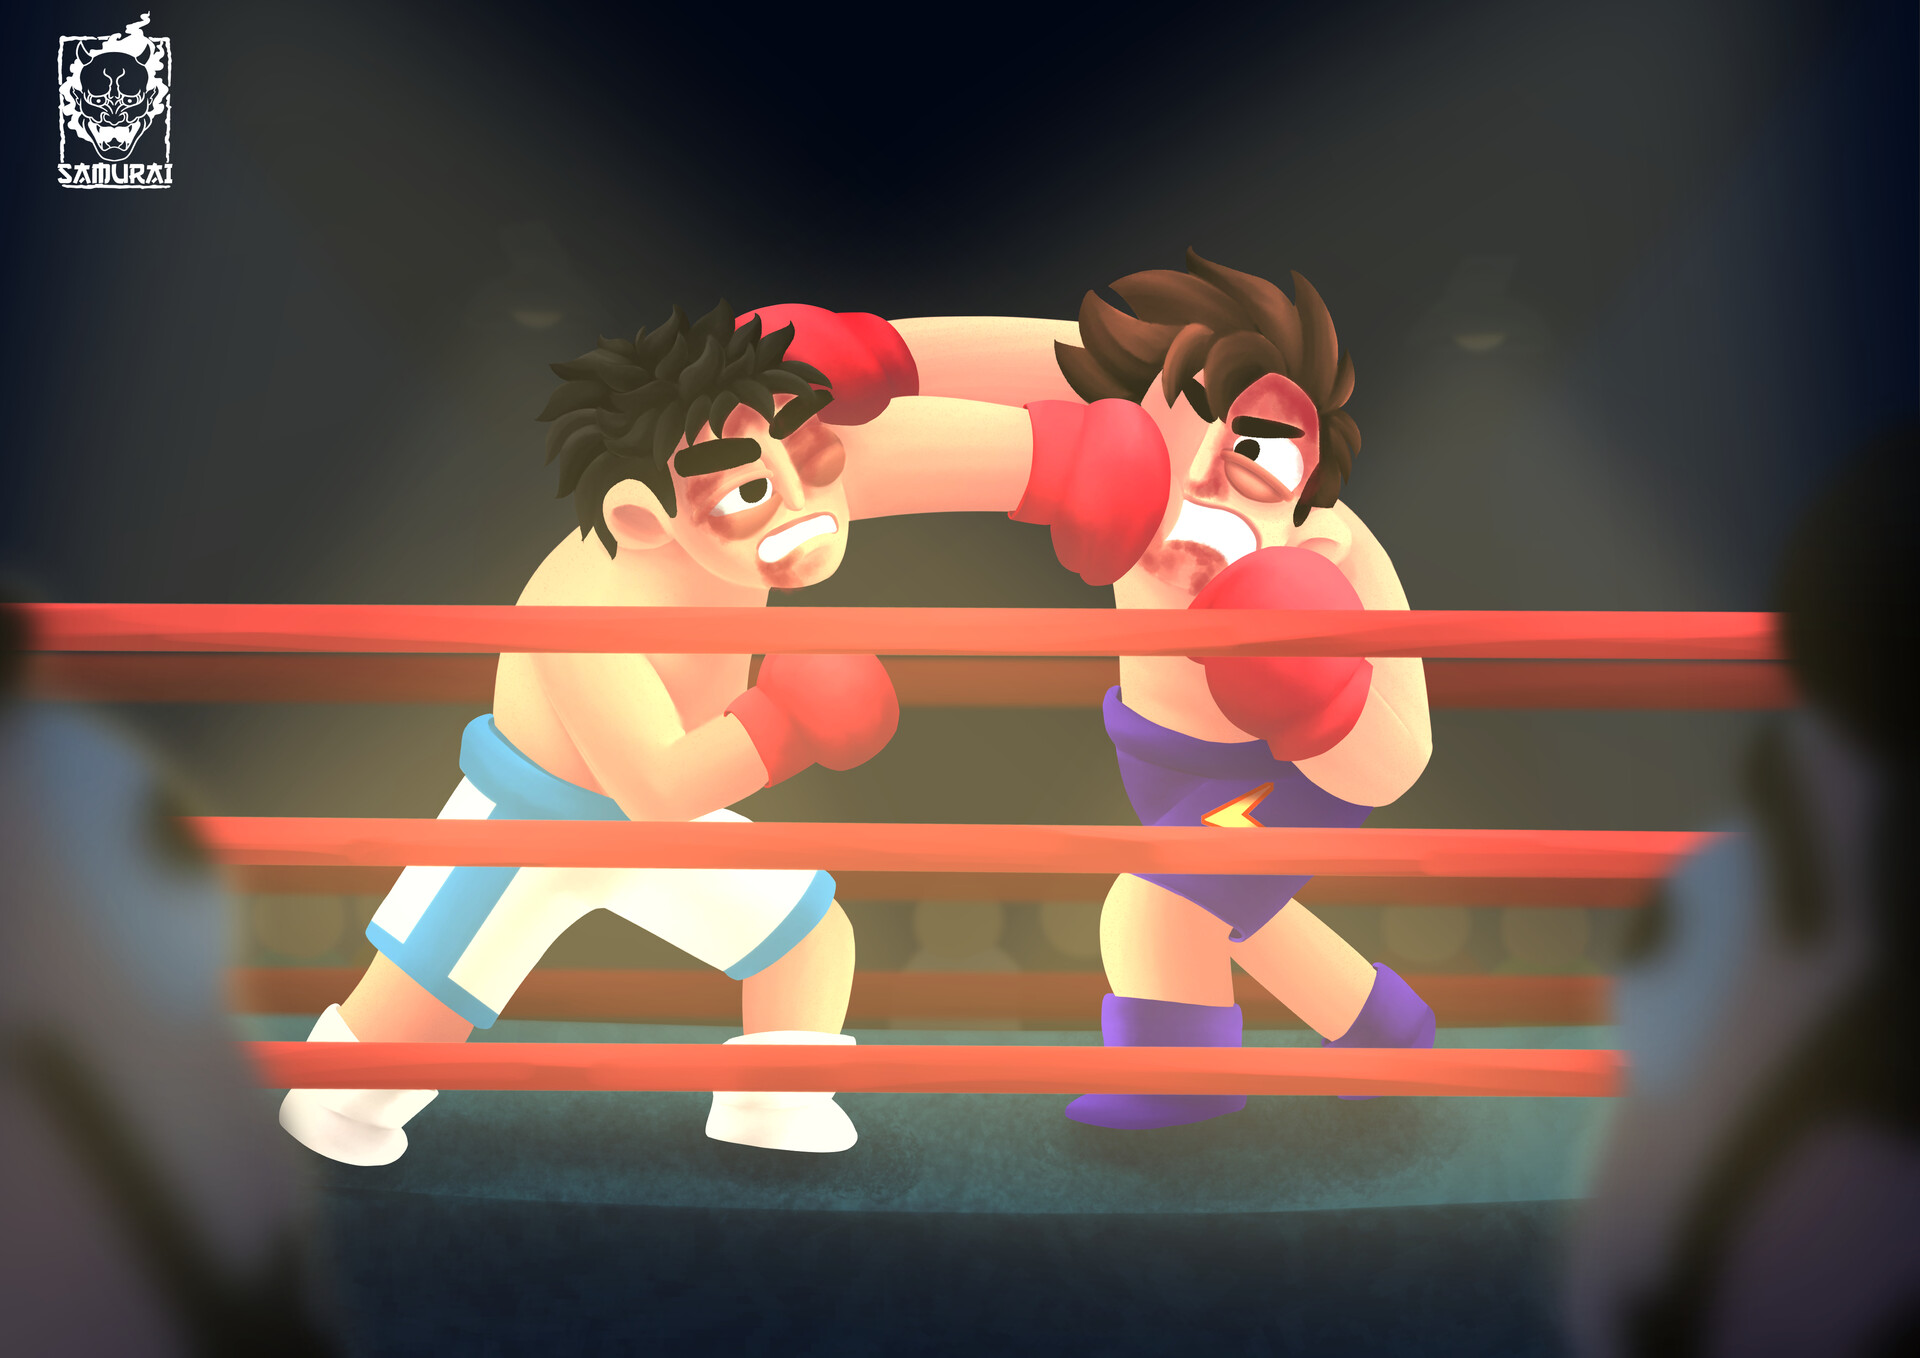 Hajime no Ippo Real life Boxing Moments 